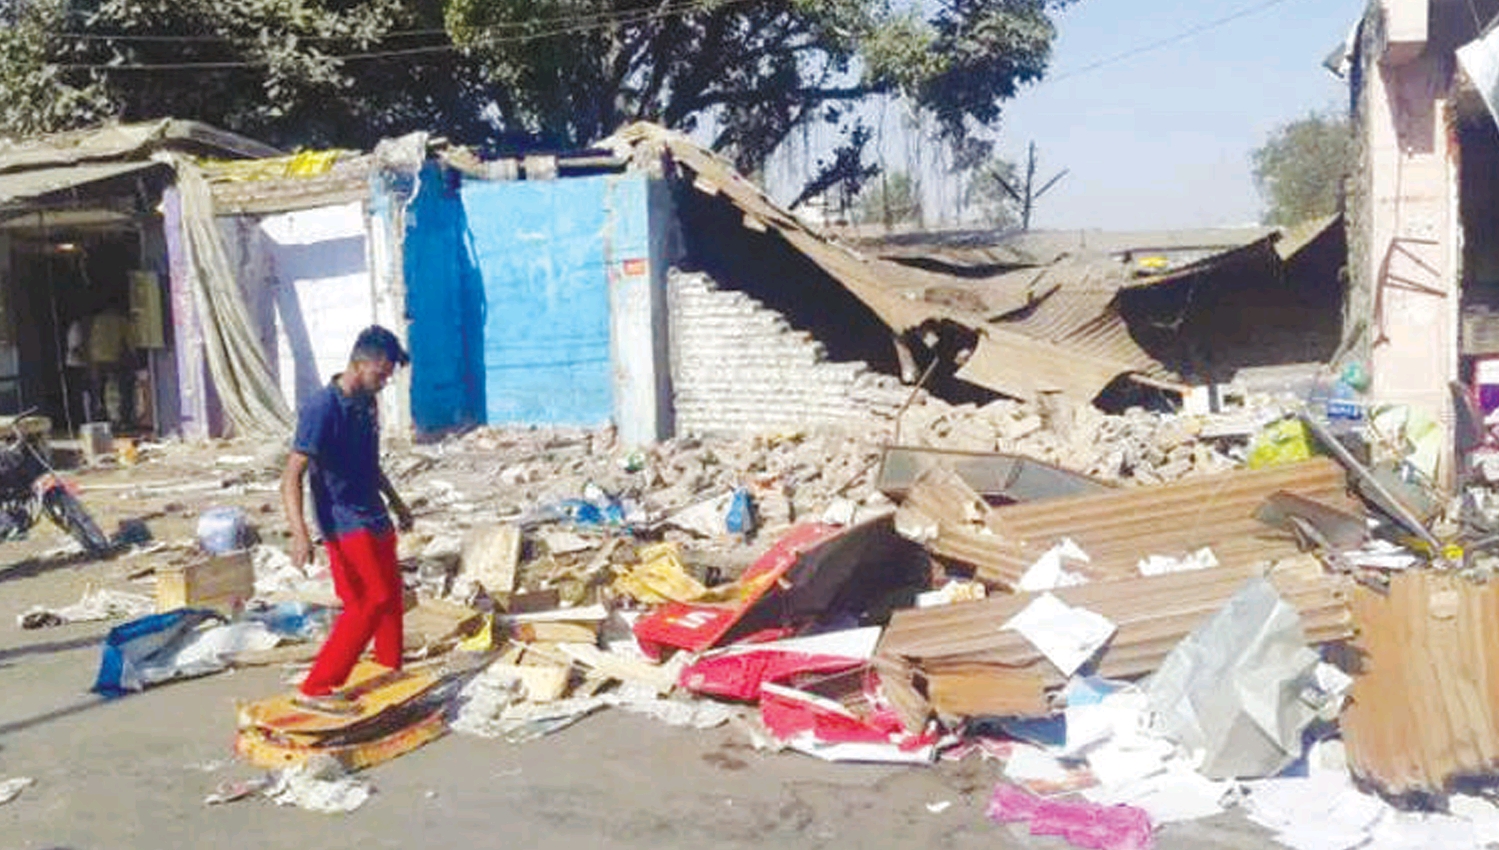 अर्जुन के बाणः लोग टूट जाते हैं एक घर बनाने में, तुम तरस नहीं खाते बस्तियां जलाने में